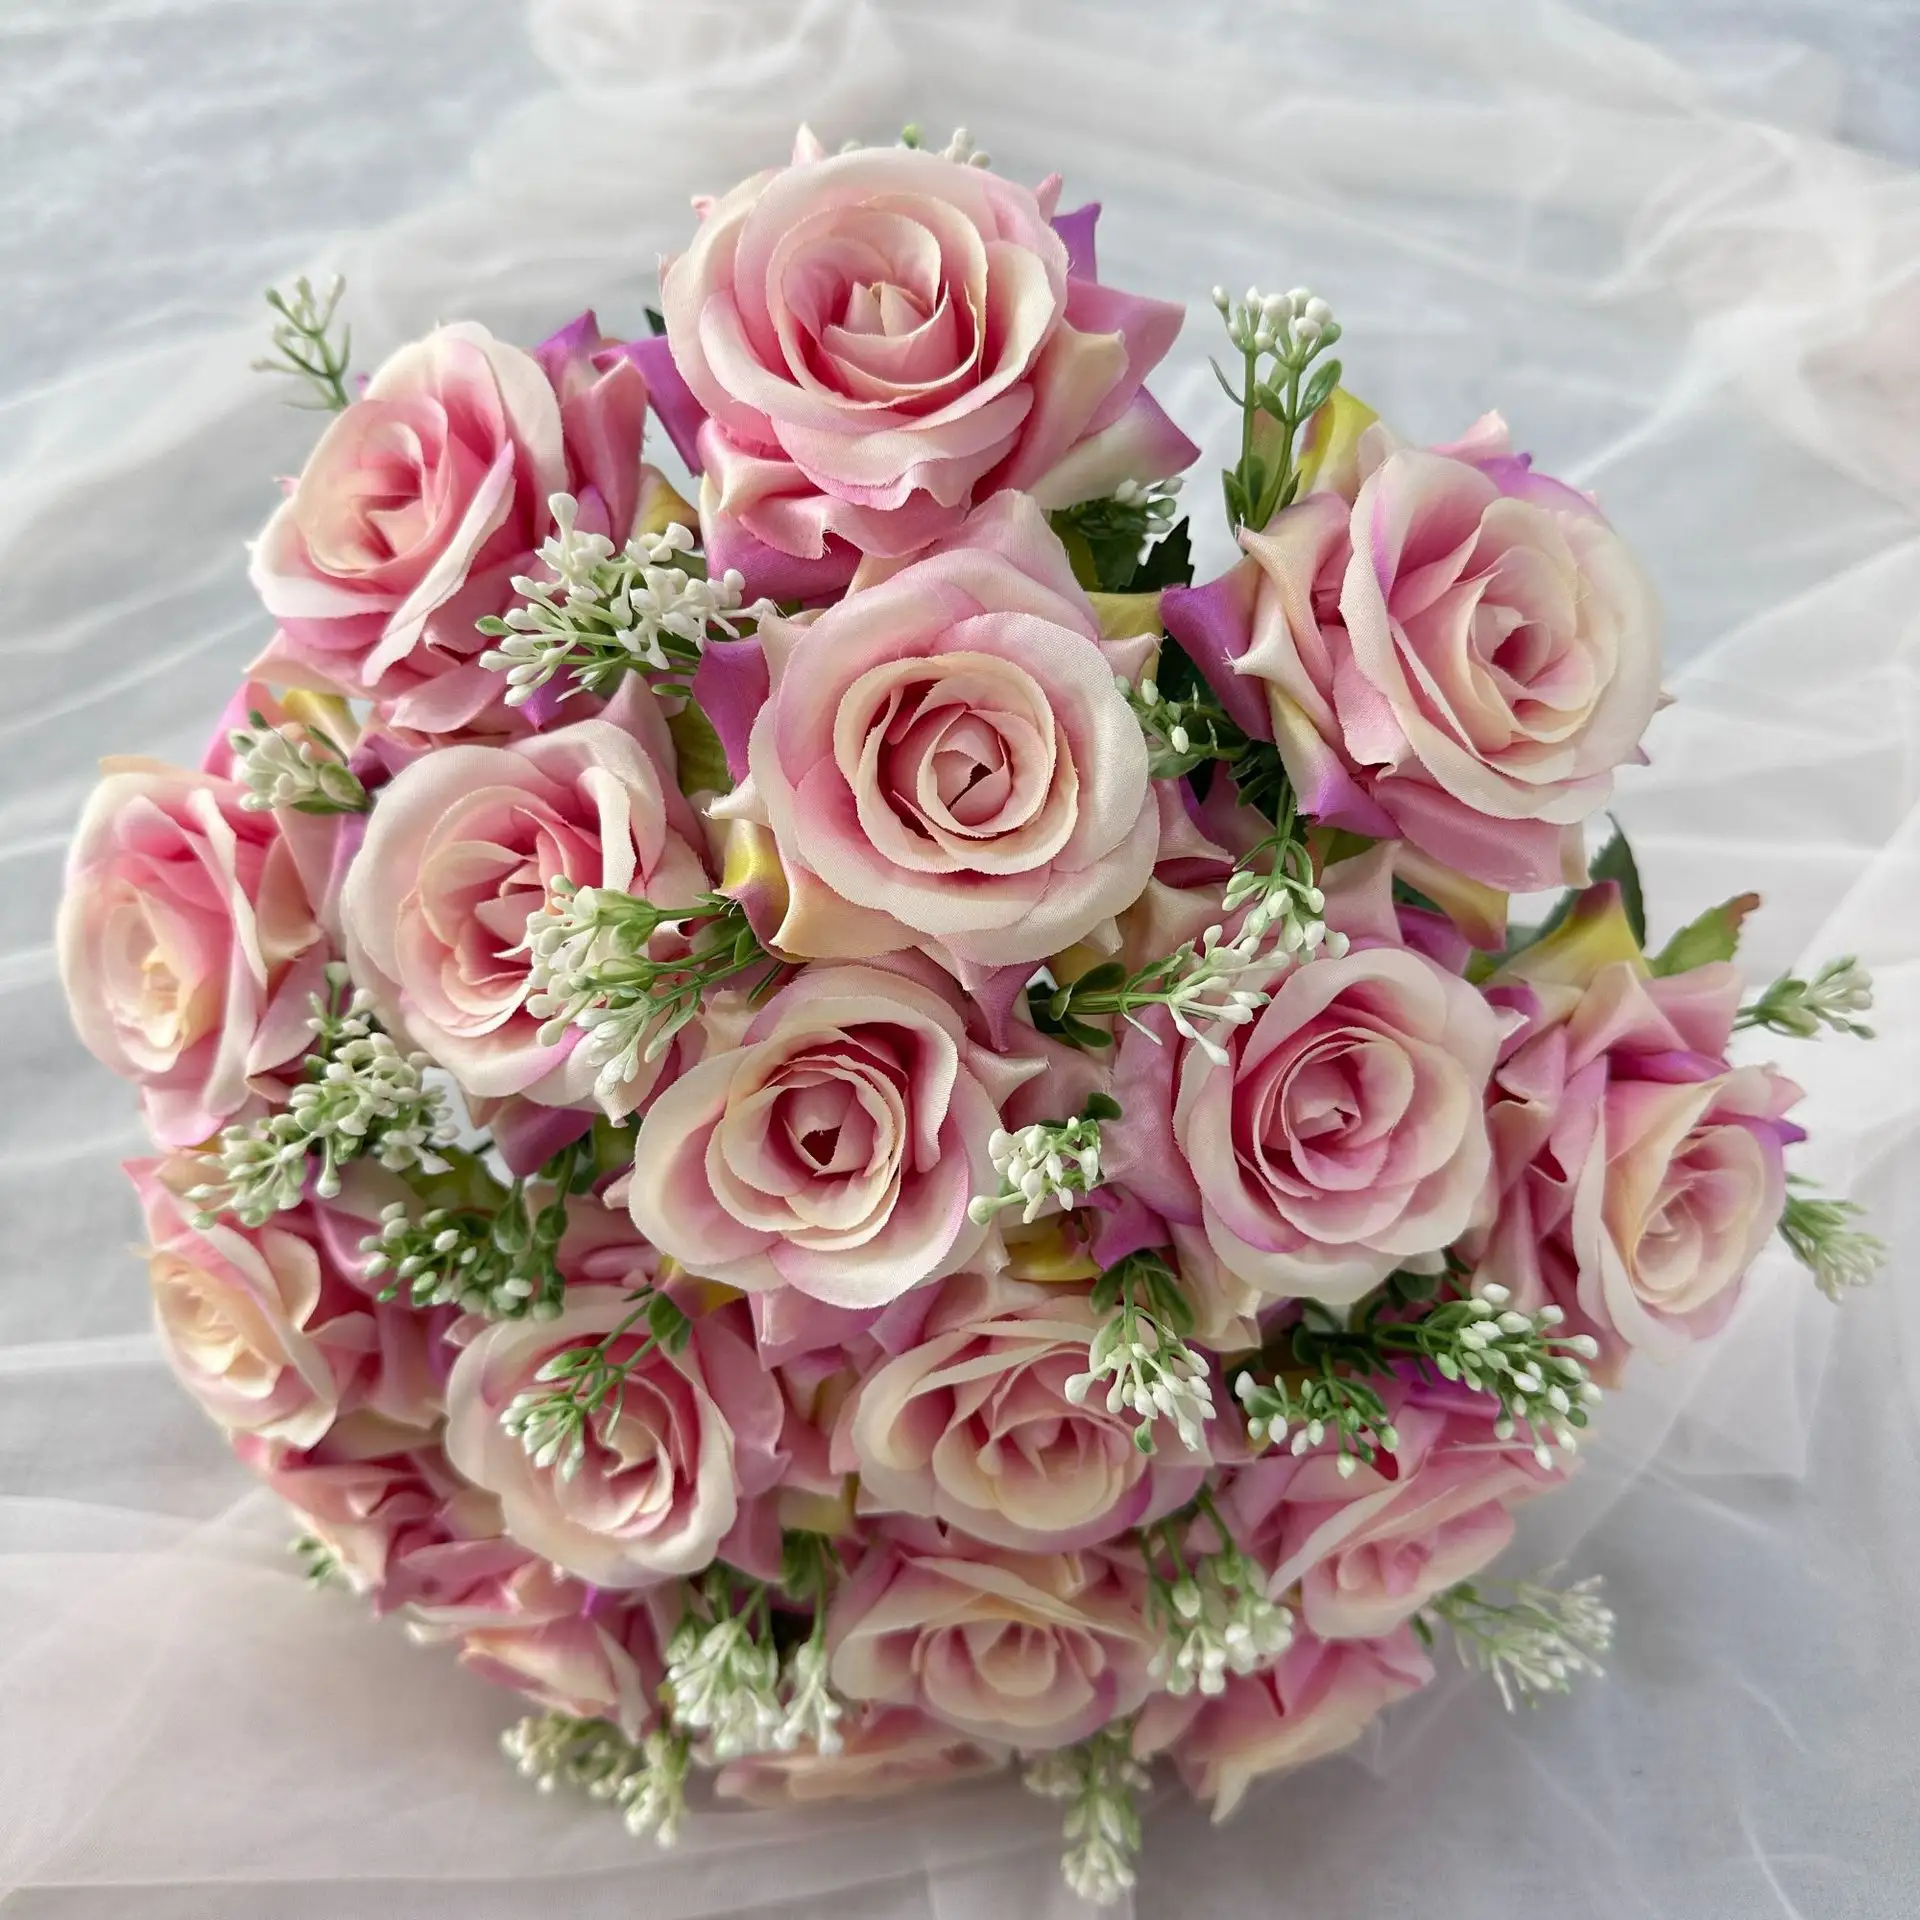 Nuevo diseño de alta calidad 18 cabezas ramo de rosas Flor de seda rojo boda novia ramo hogar Interior florero decoración DIY.